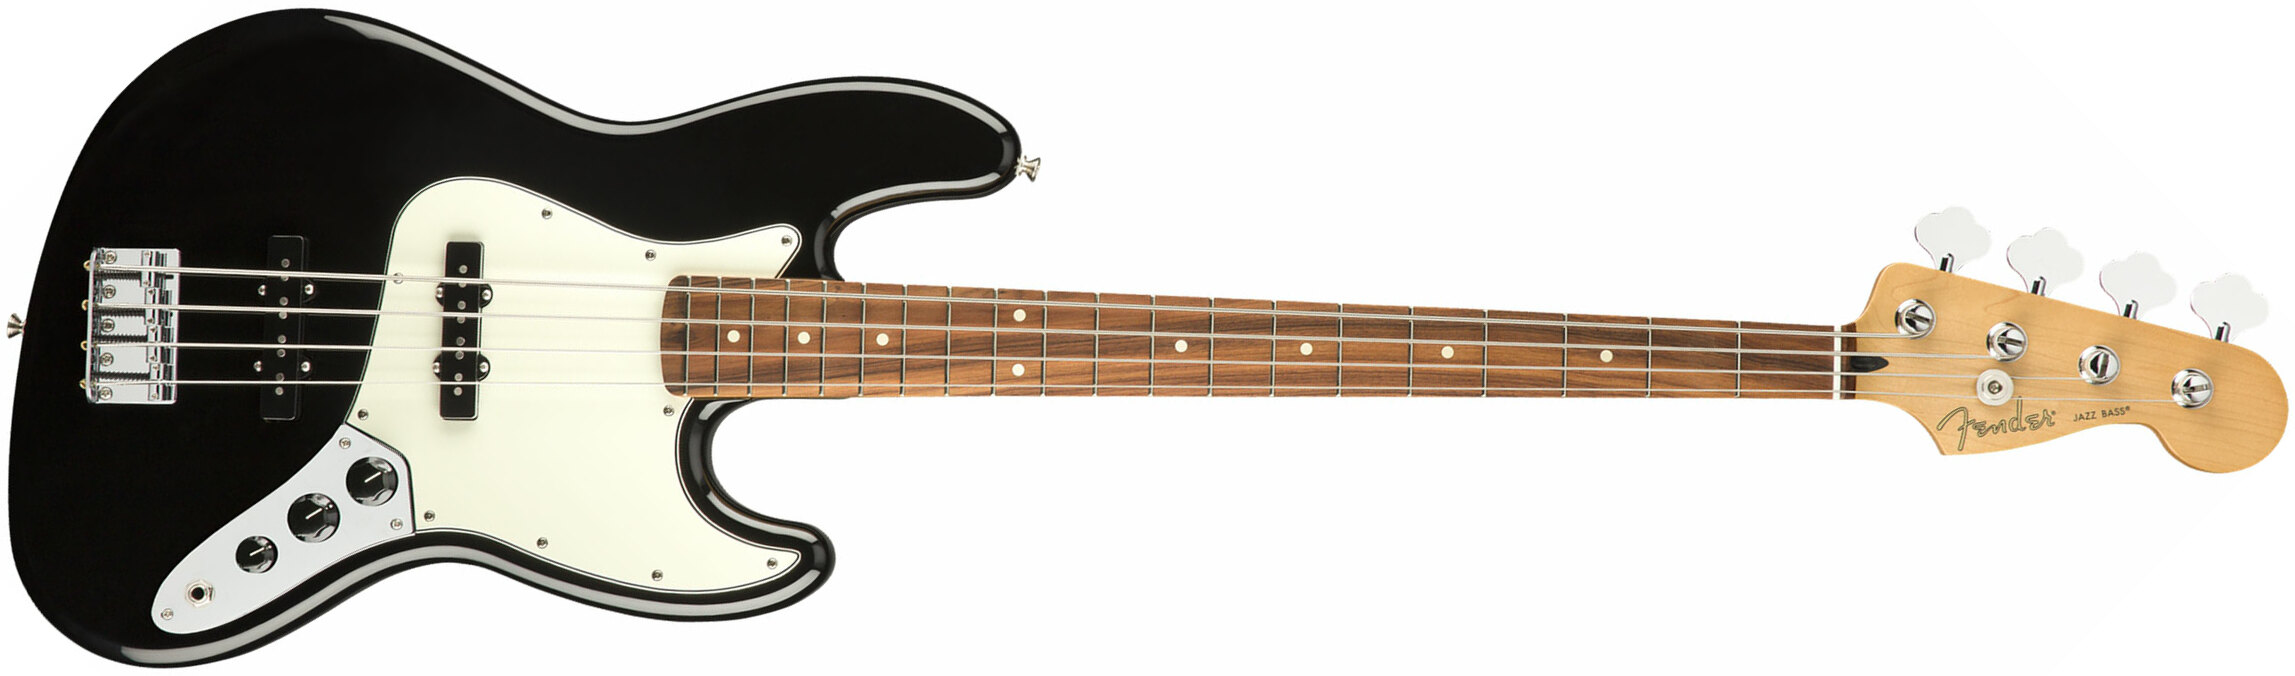 Fender Jazz Bass Player Mex Pf - Black - Solid body elektrische bas - Main picture